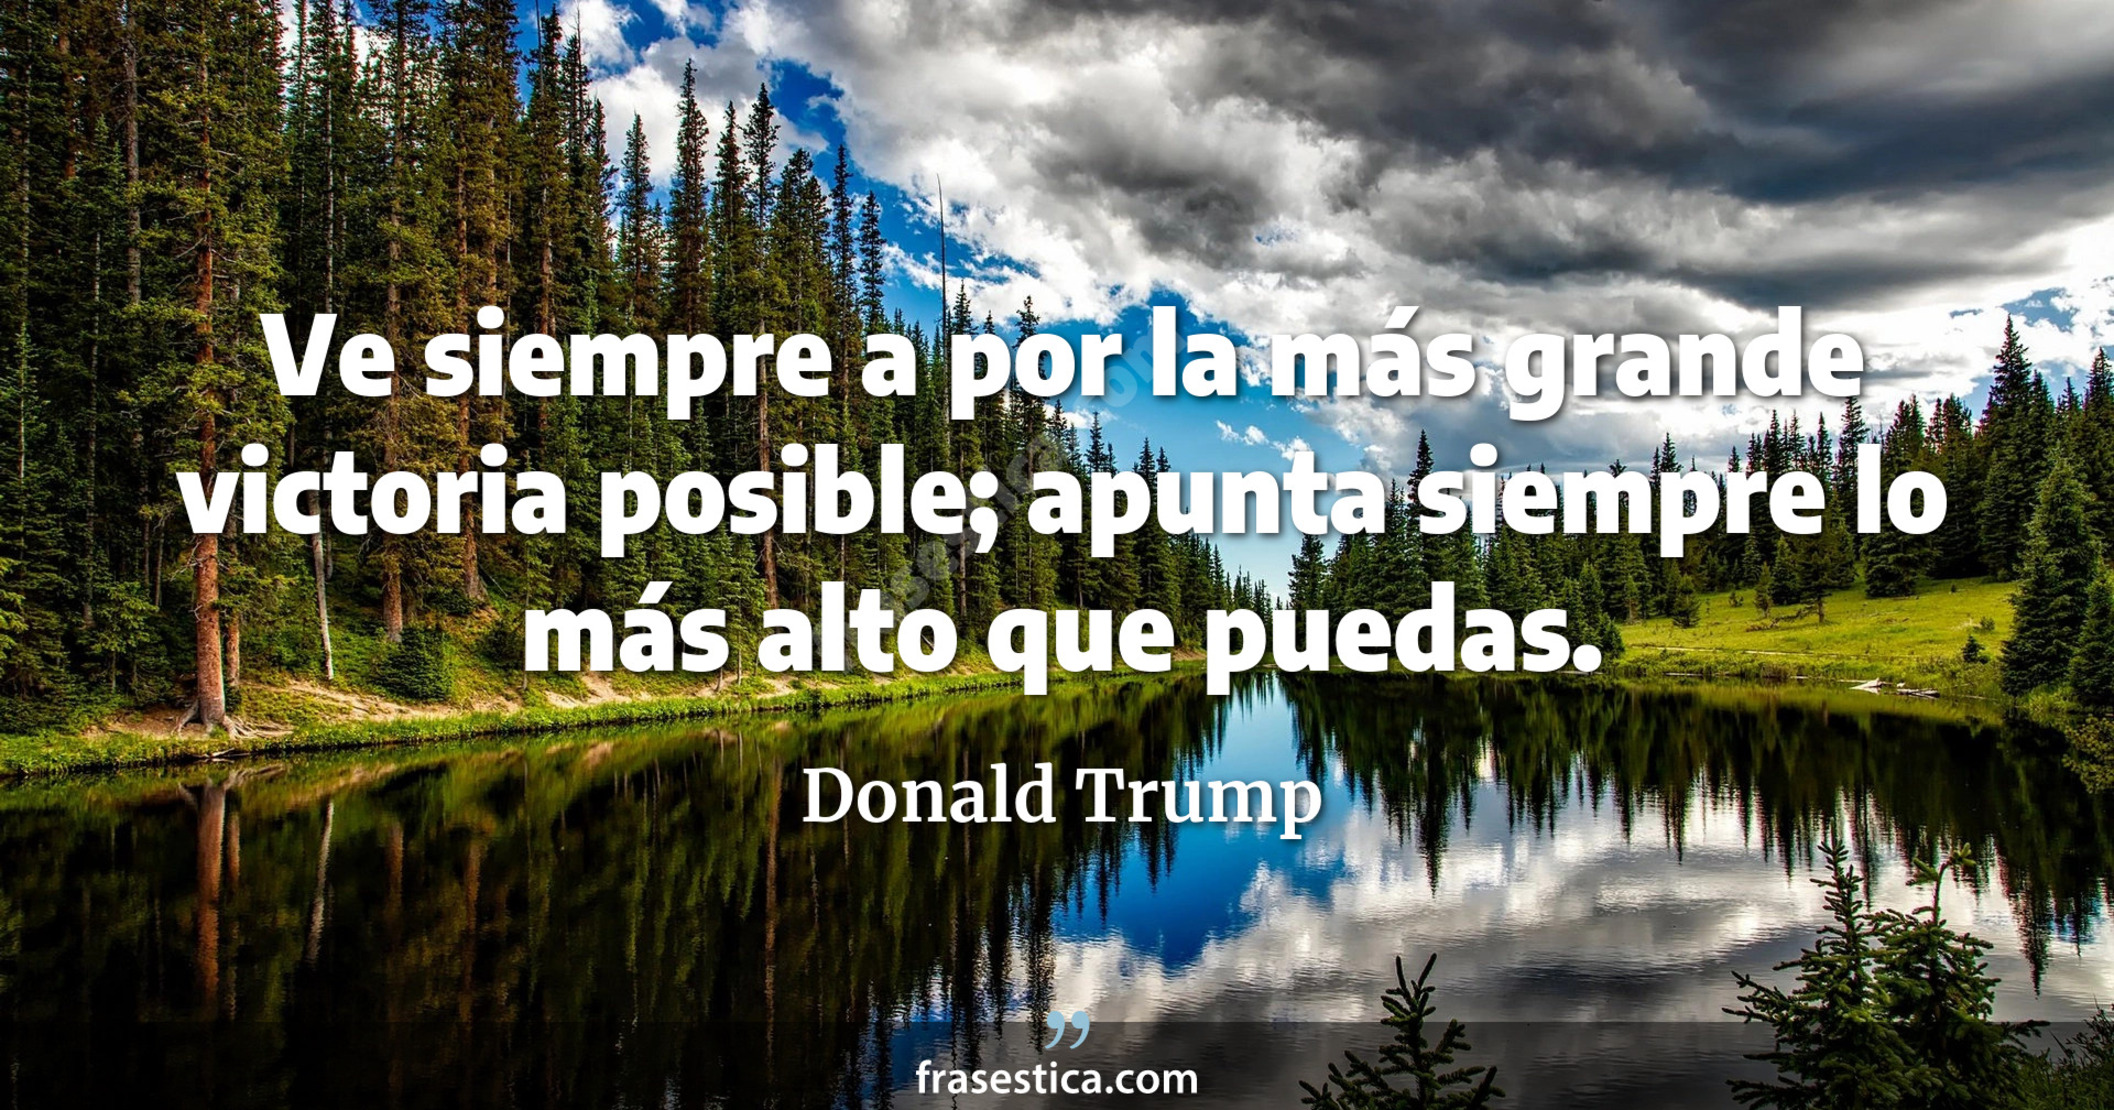 Ve siempre a por la más grande victoria posible; apunta siempre lo más alto que puedas. - Donald Trump